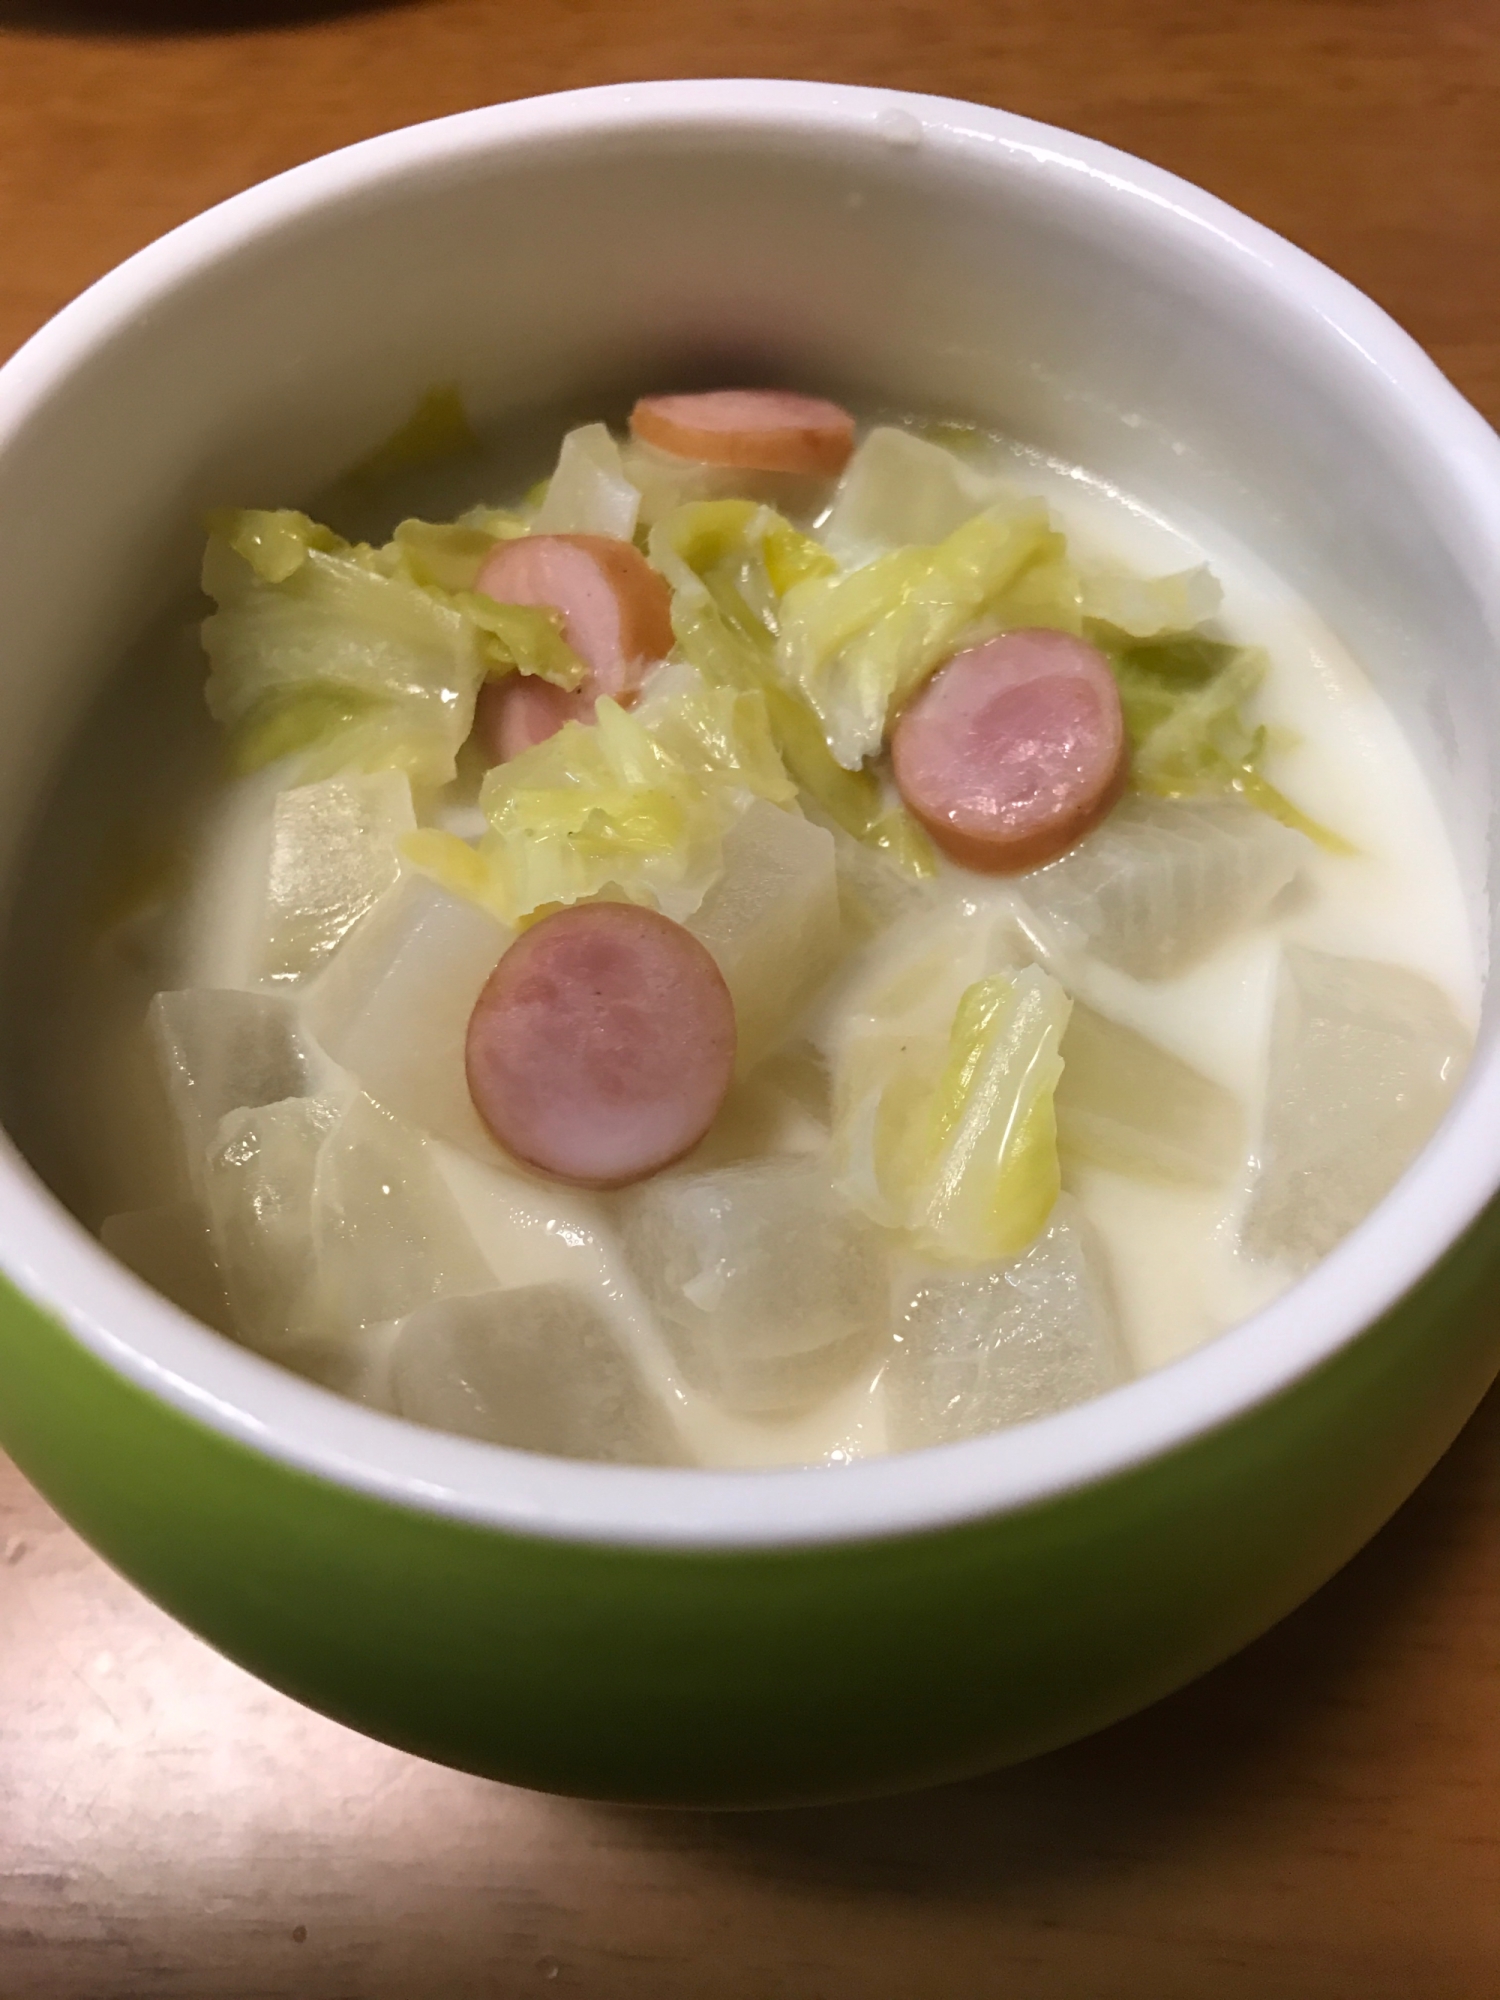 大根と白菜のミルクスープ